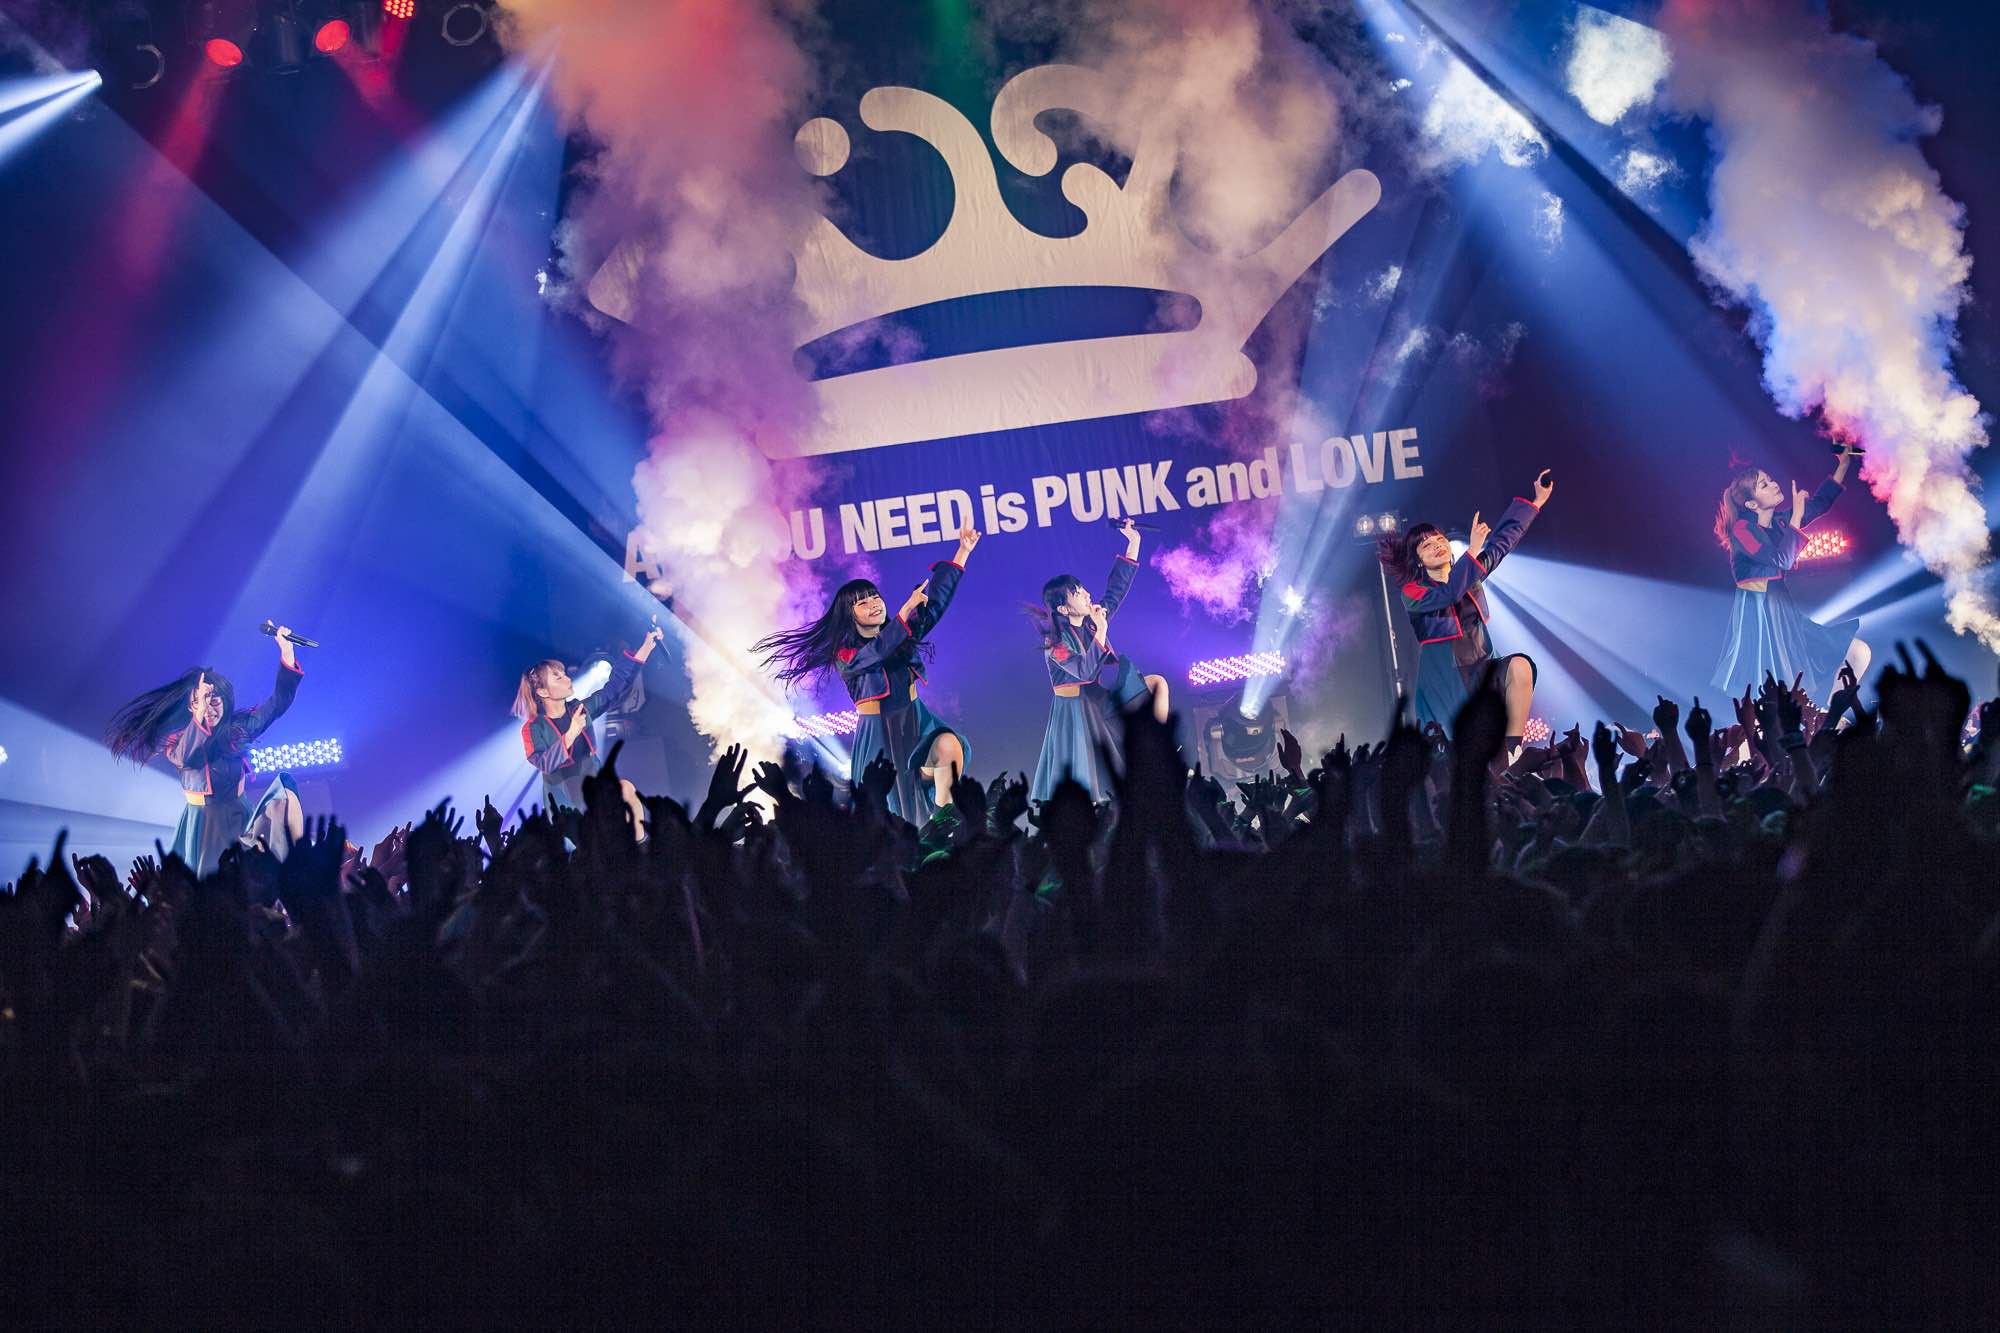 楽器を持たないパンクバンド Bish 3回目の開催となるzepp Tokyoフリーライブ Tbs3 を開催 メジャーセカンド アルバムの発売を発表 アイドルプラネット Idol Planet